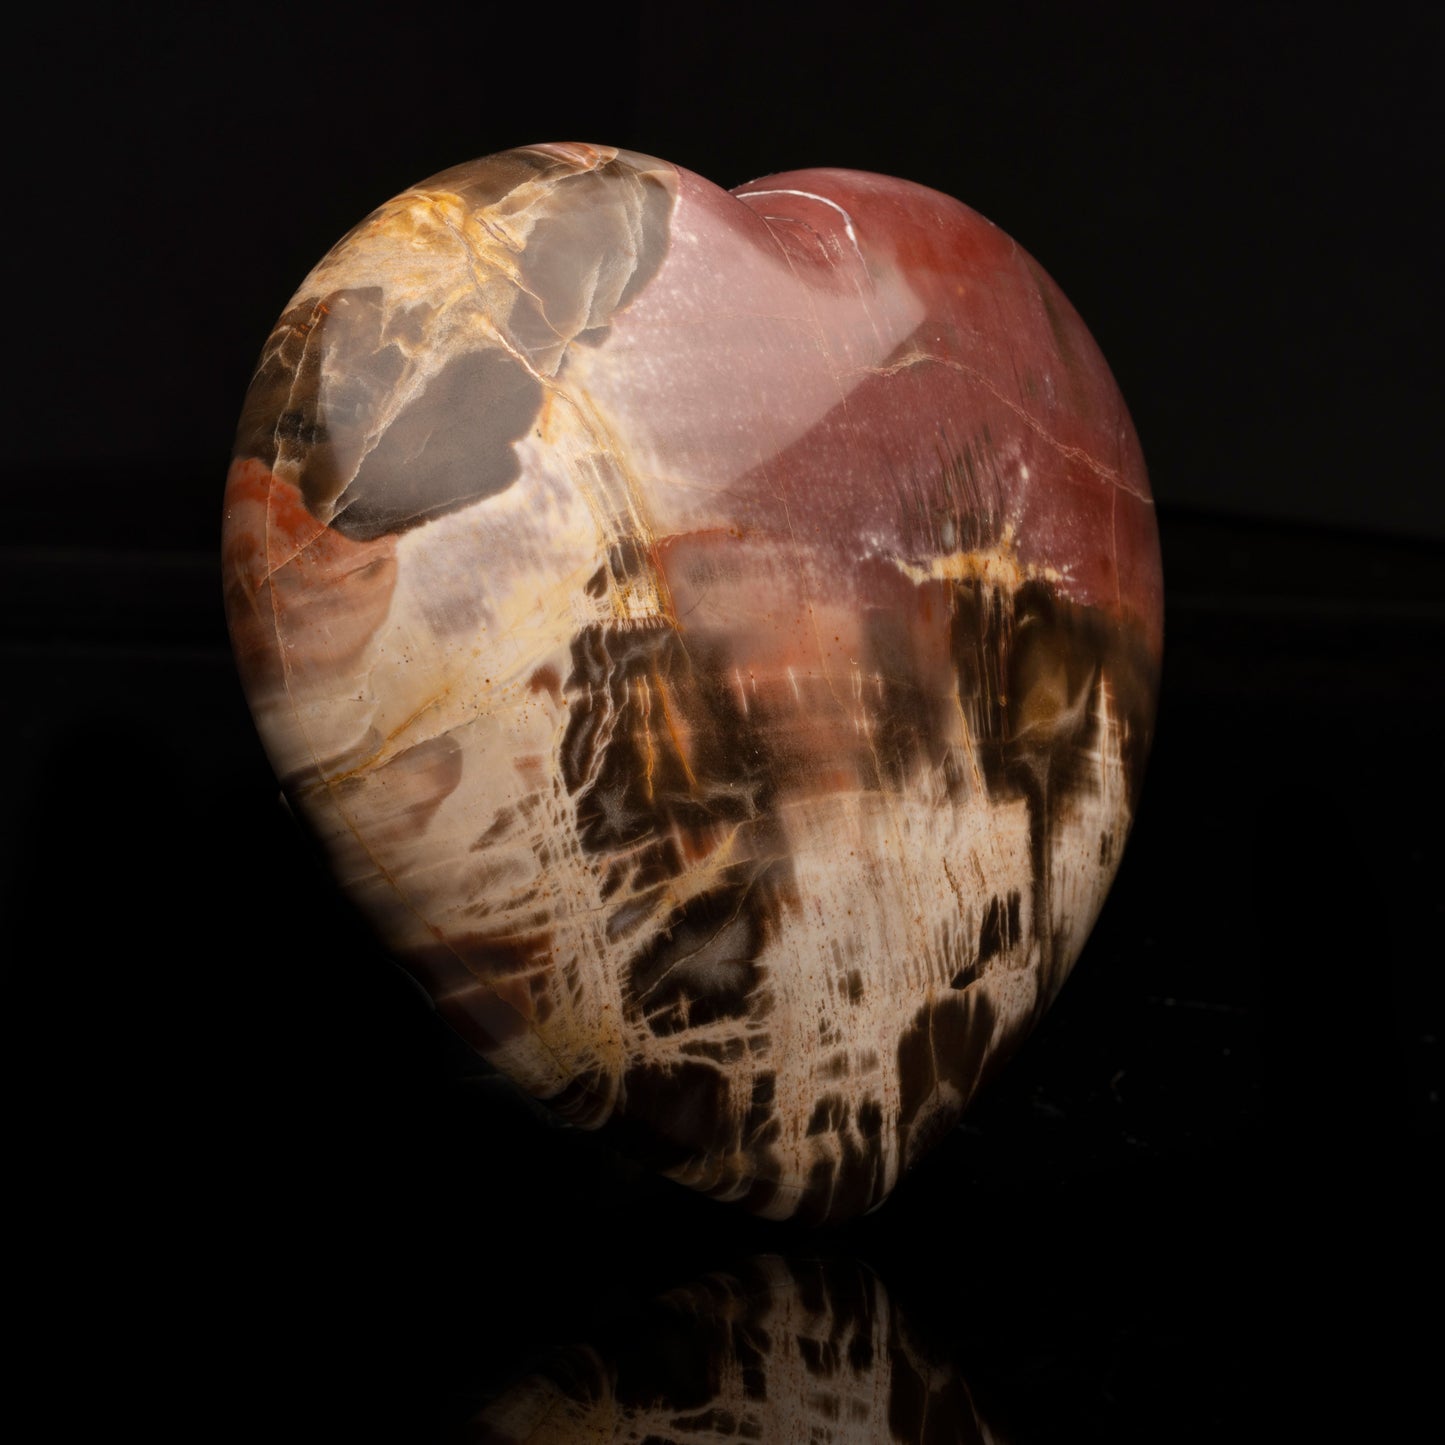 Petrified Wood Heart // 2.93 Lb.